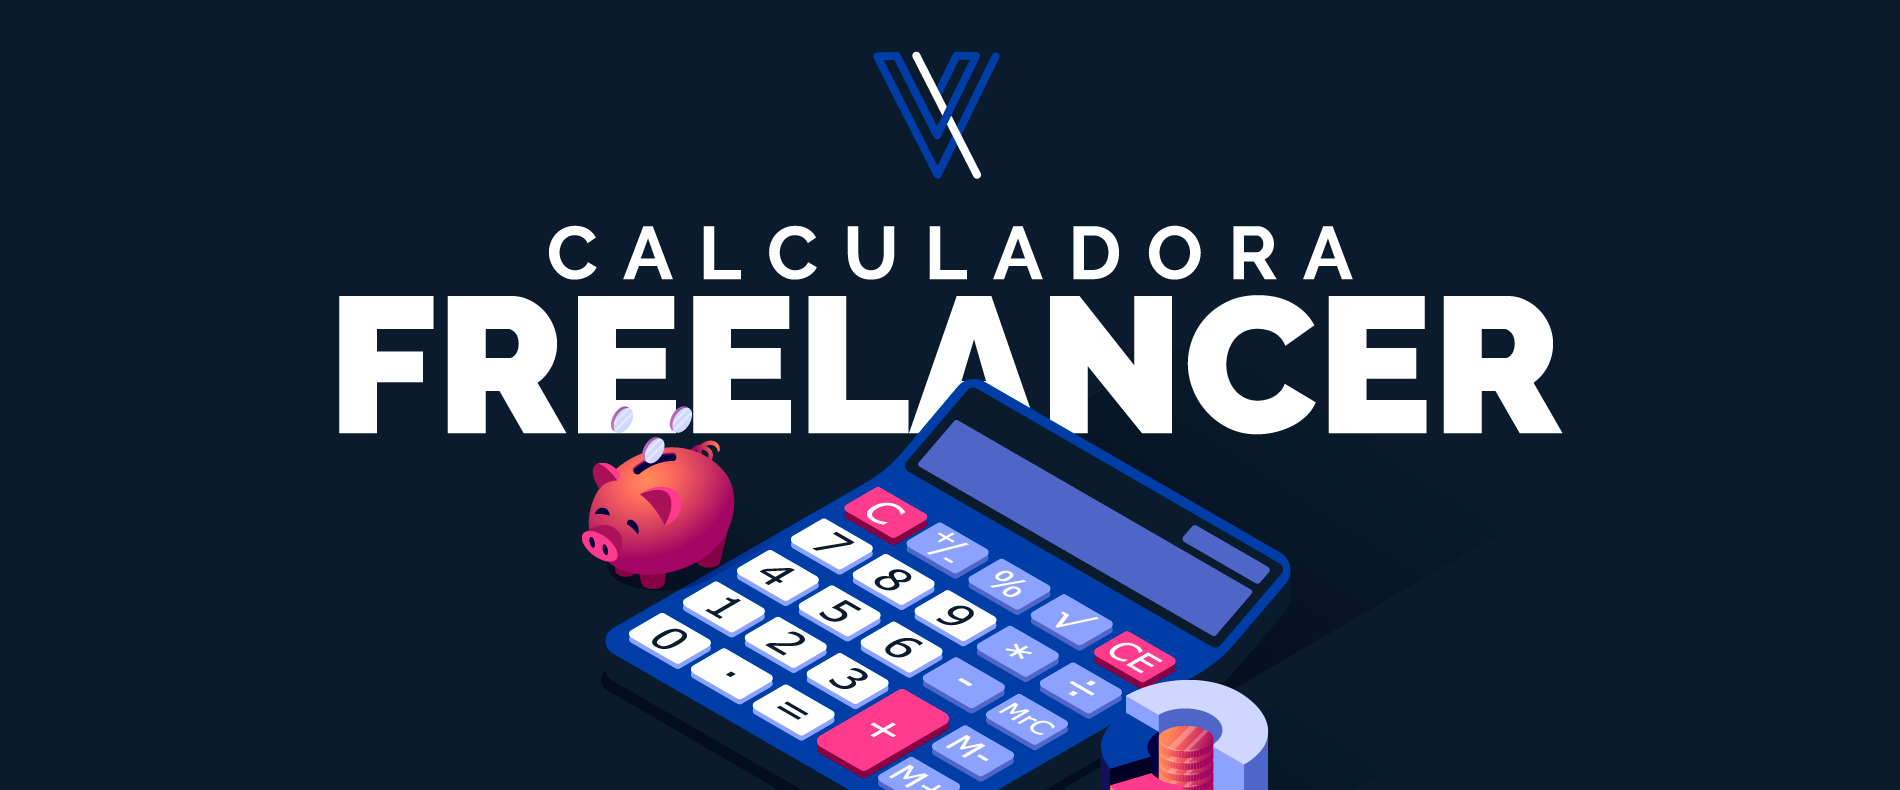 Calculadora Freelancer - Calcular Hora de Trabalho Online